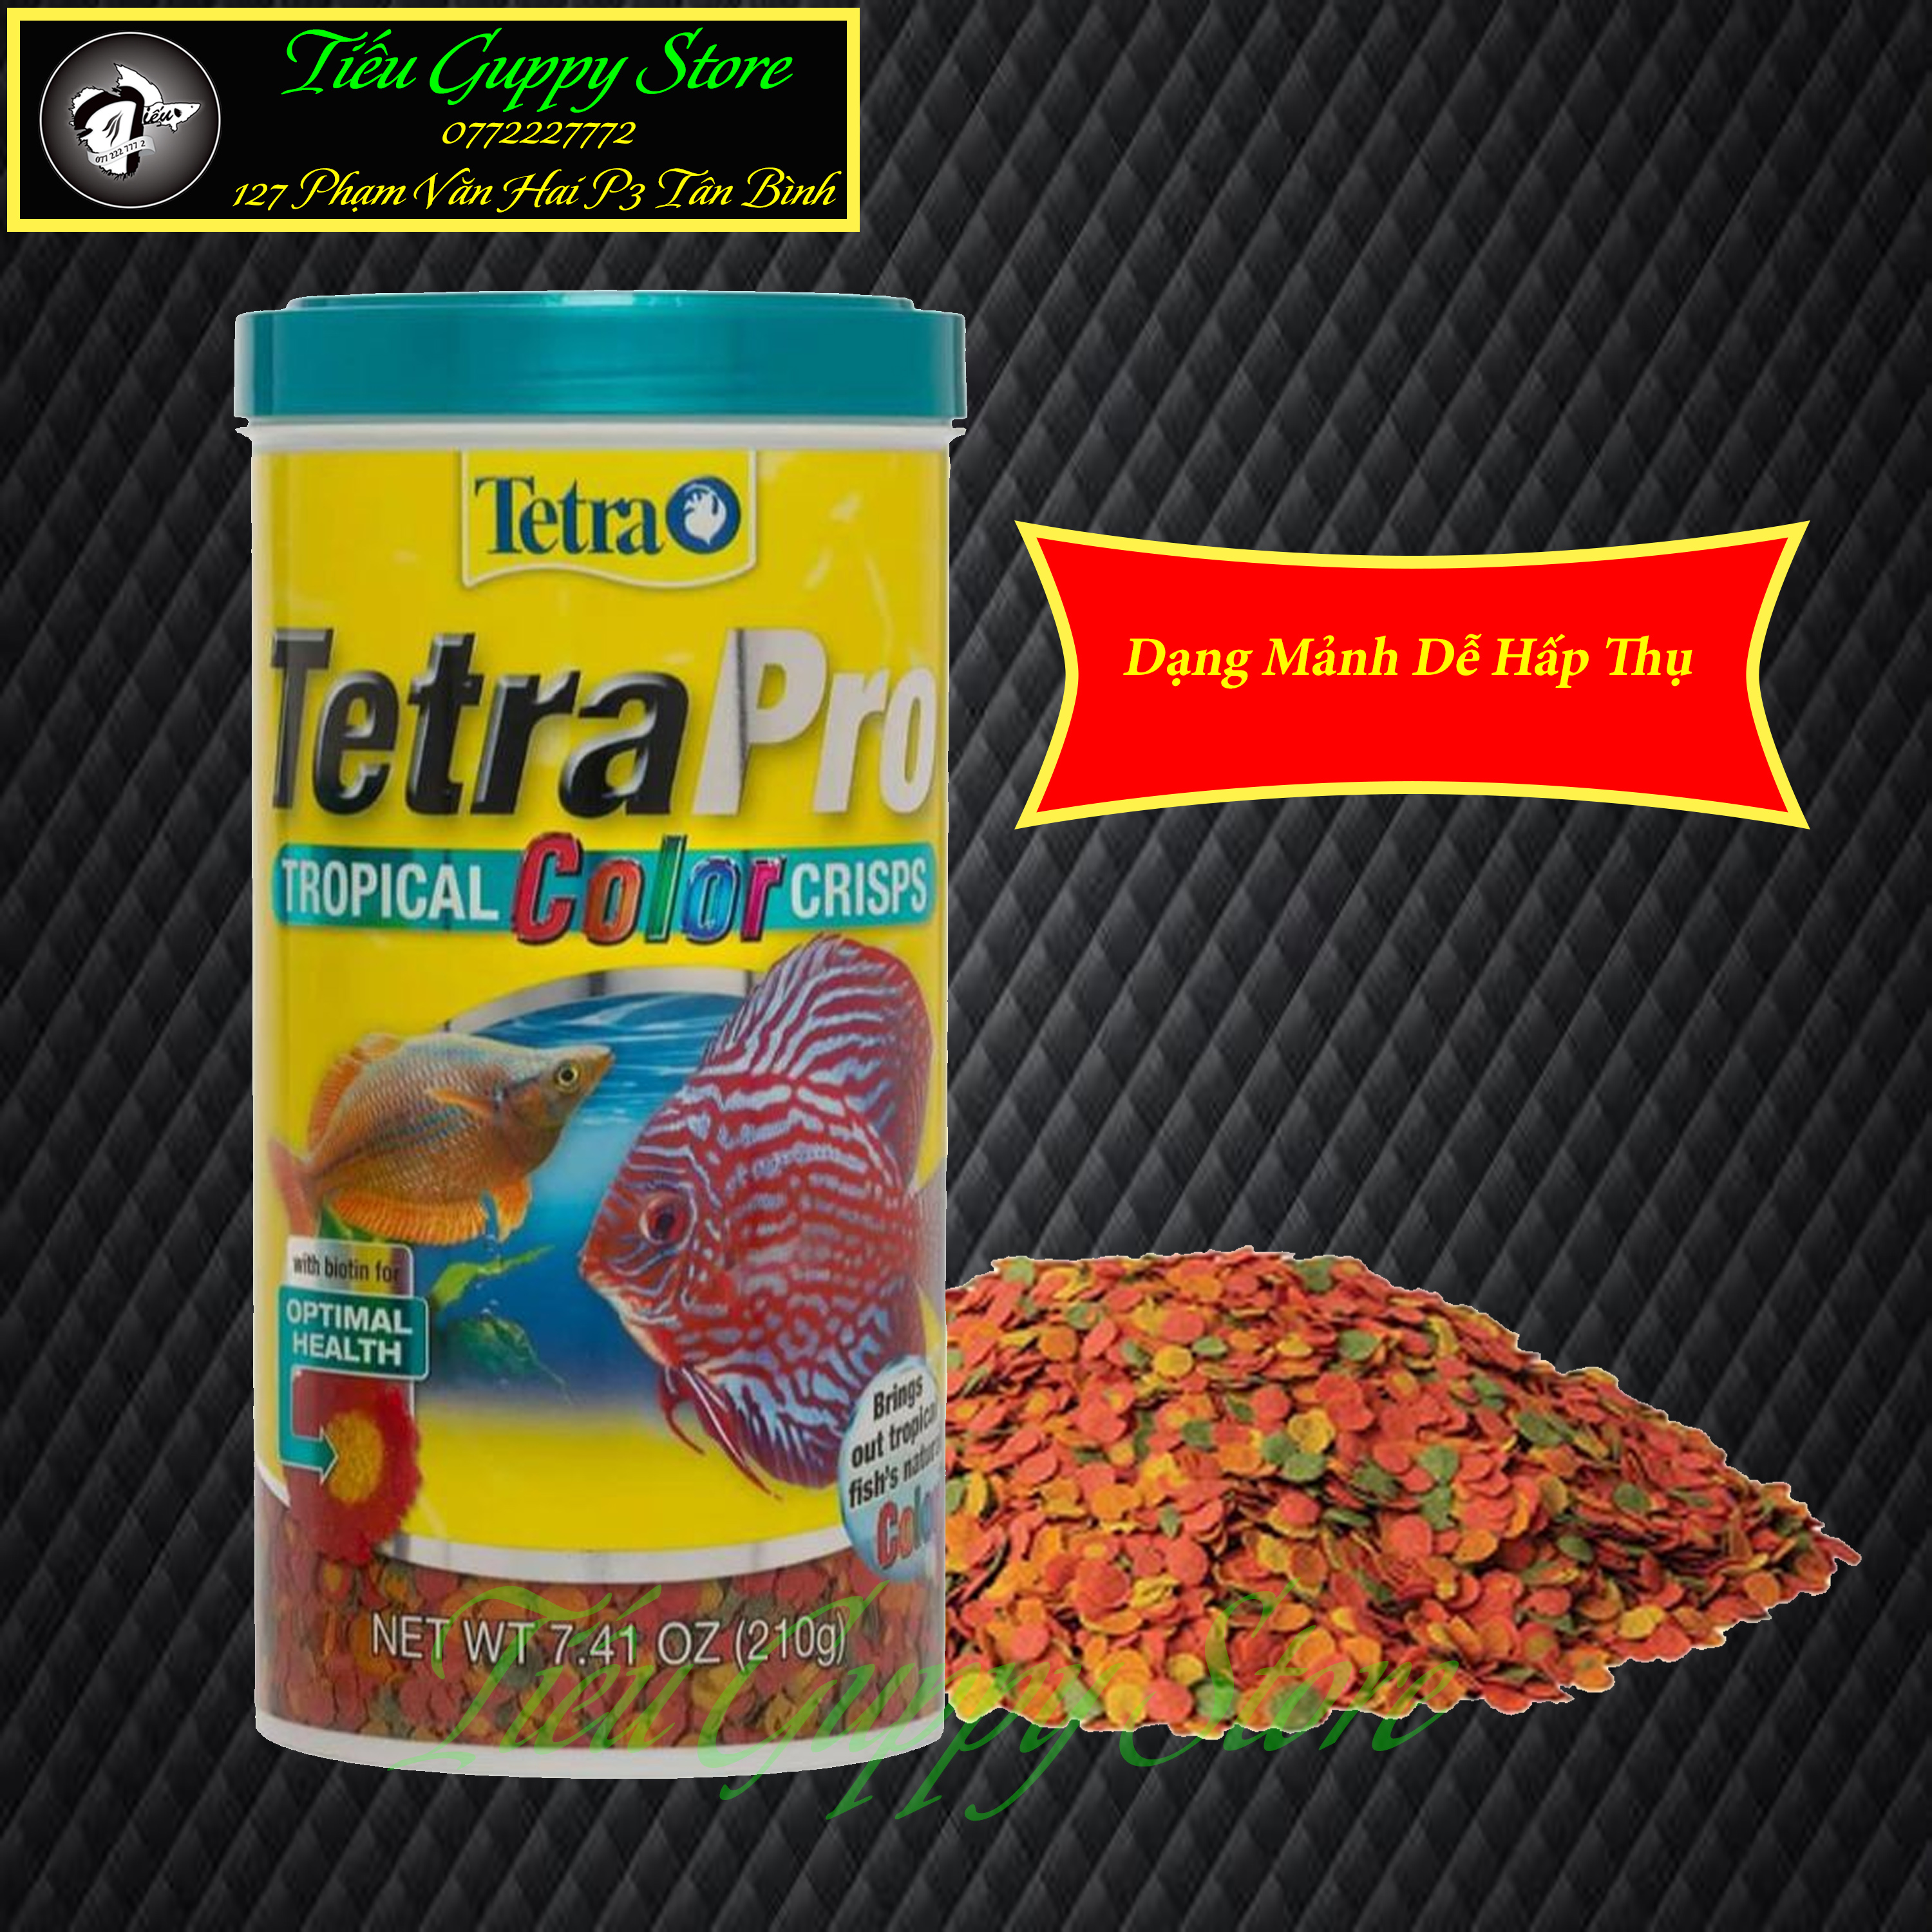 Tetra Pro Tropical Fish Color Crisps Dạng Mảnh Nhỏ - Thức Ăn Cao Cấp Dành Cho Cá Dĩa và Các Dòng Cá Thủy Sinh thumbnail